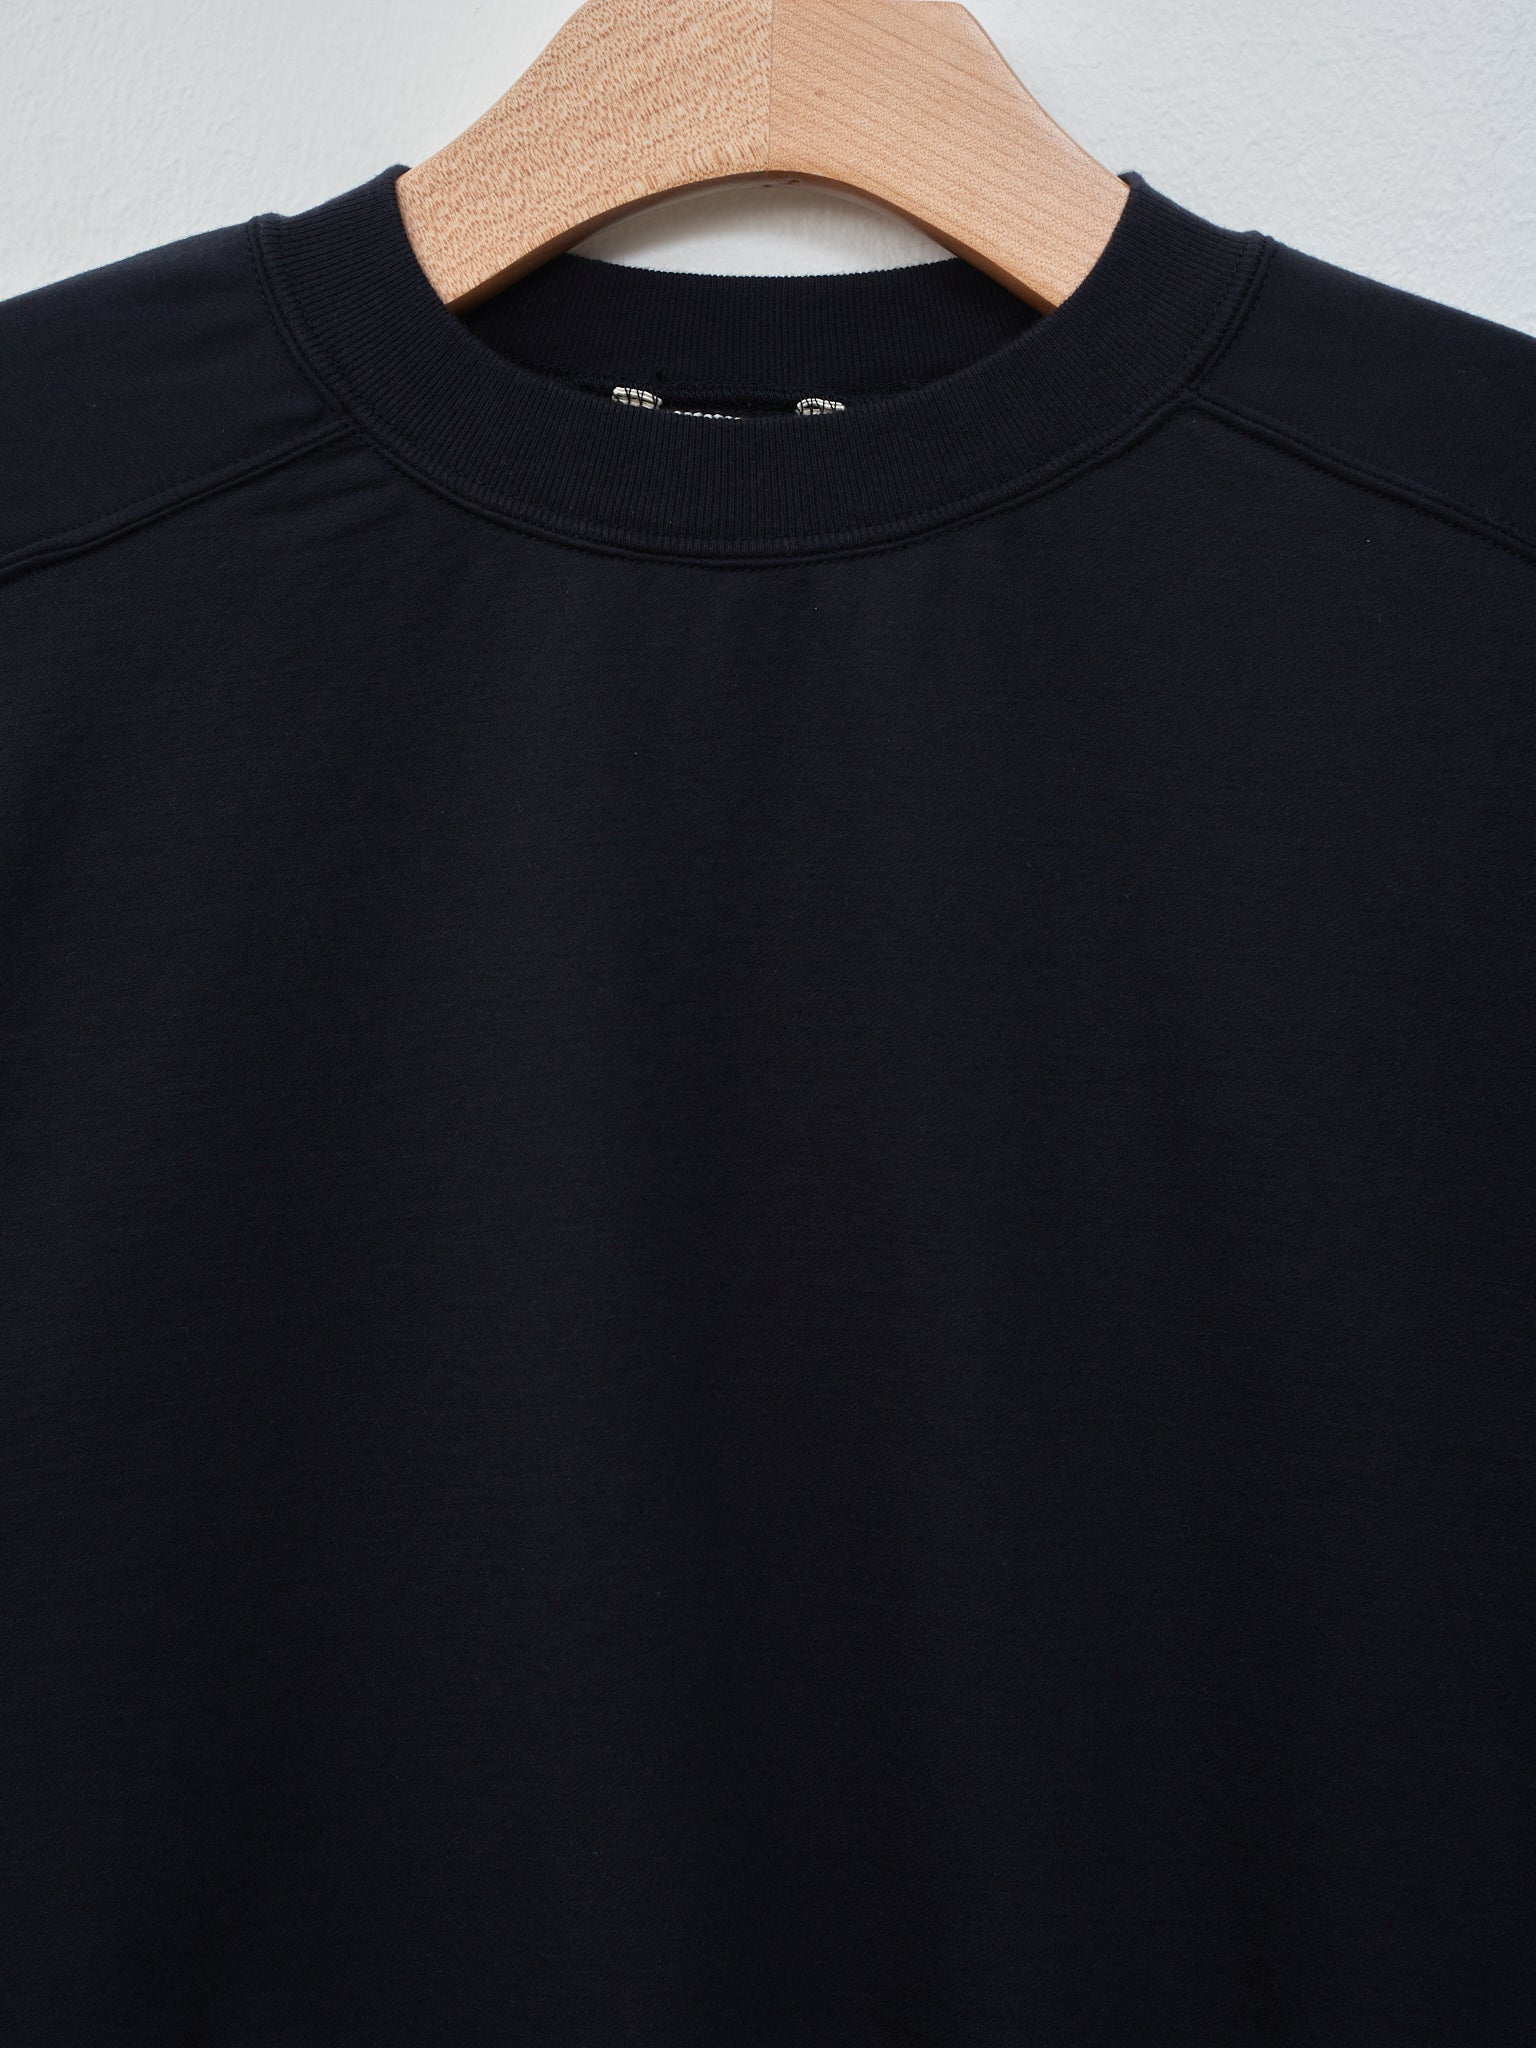 Namu Shop - Auralee Elastic High Gauge Sweat Half Sleeve Pullover - Ink Black